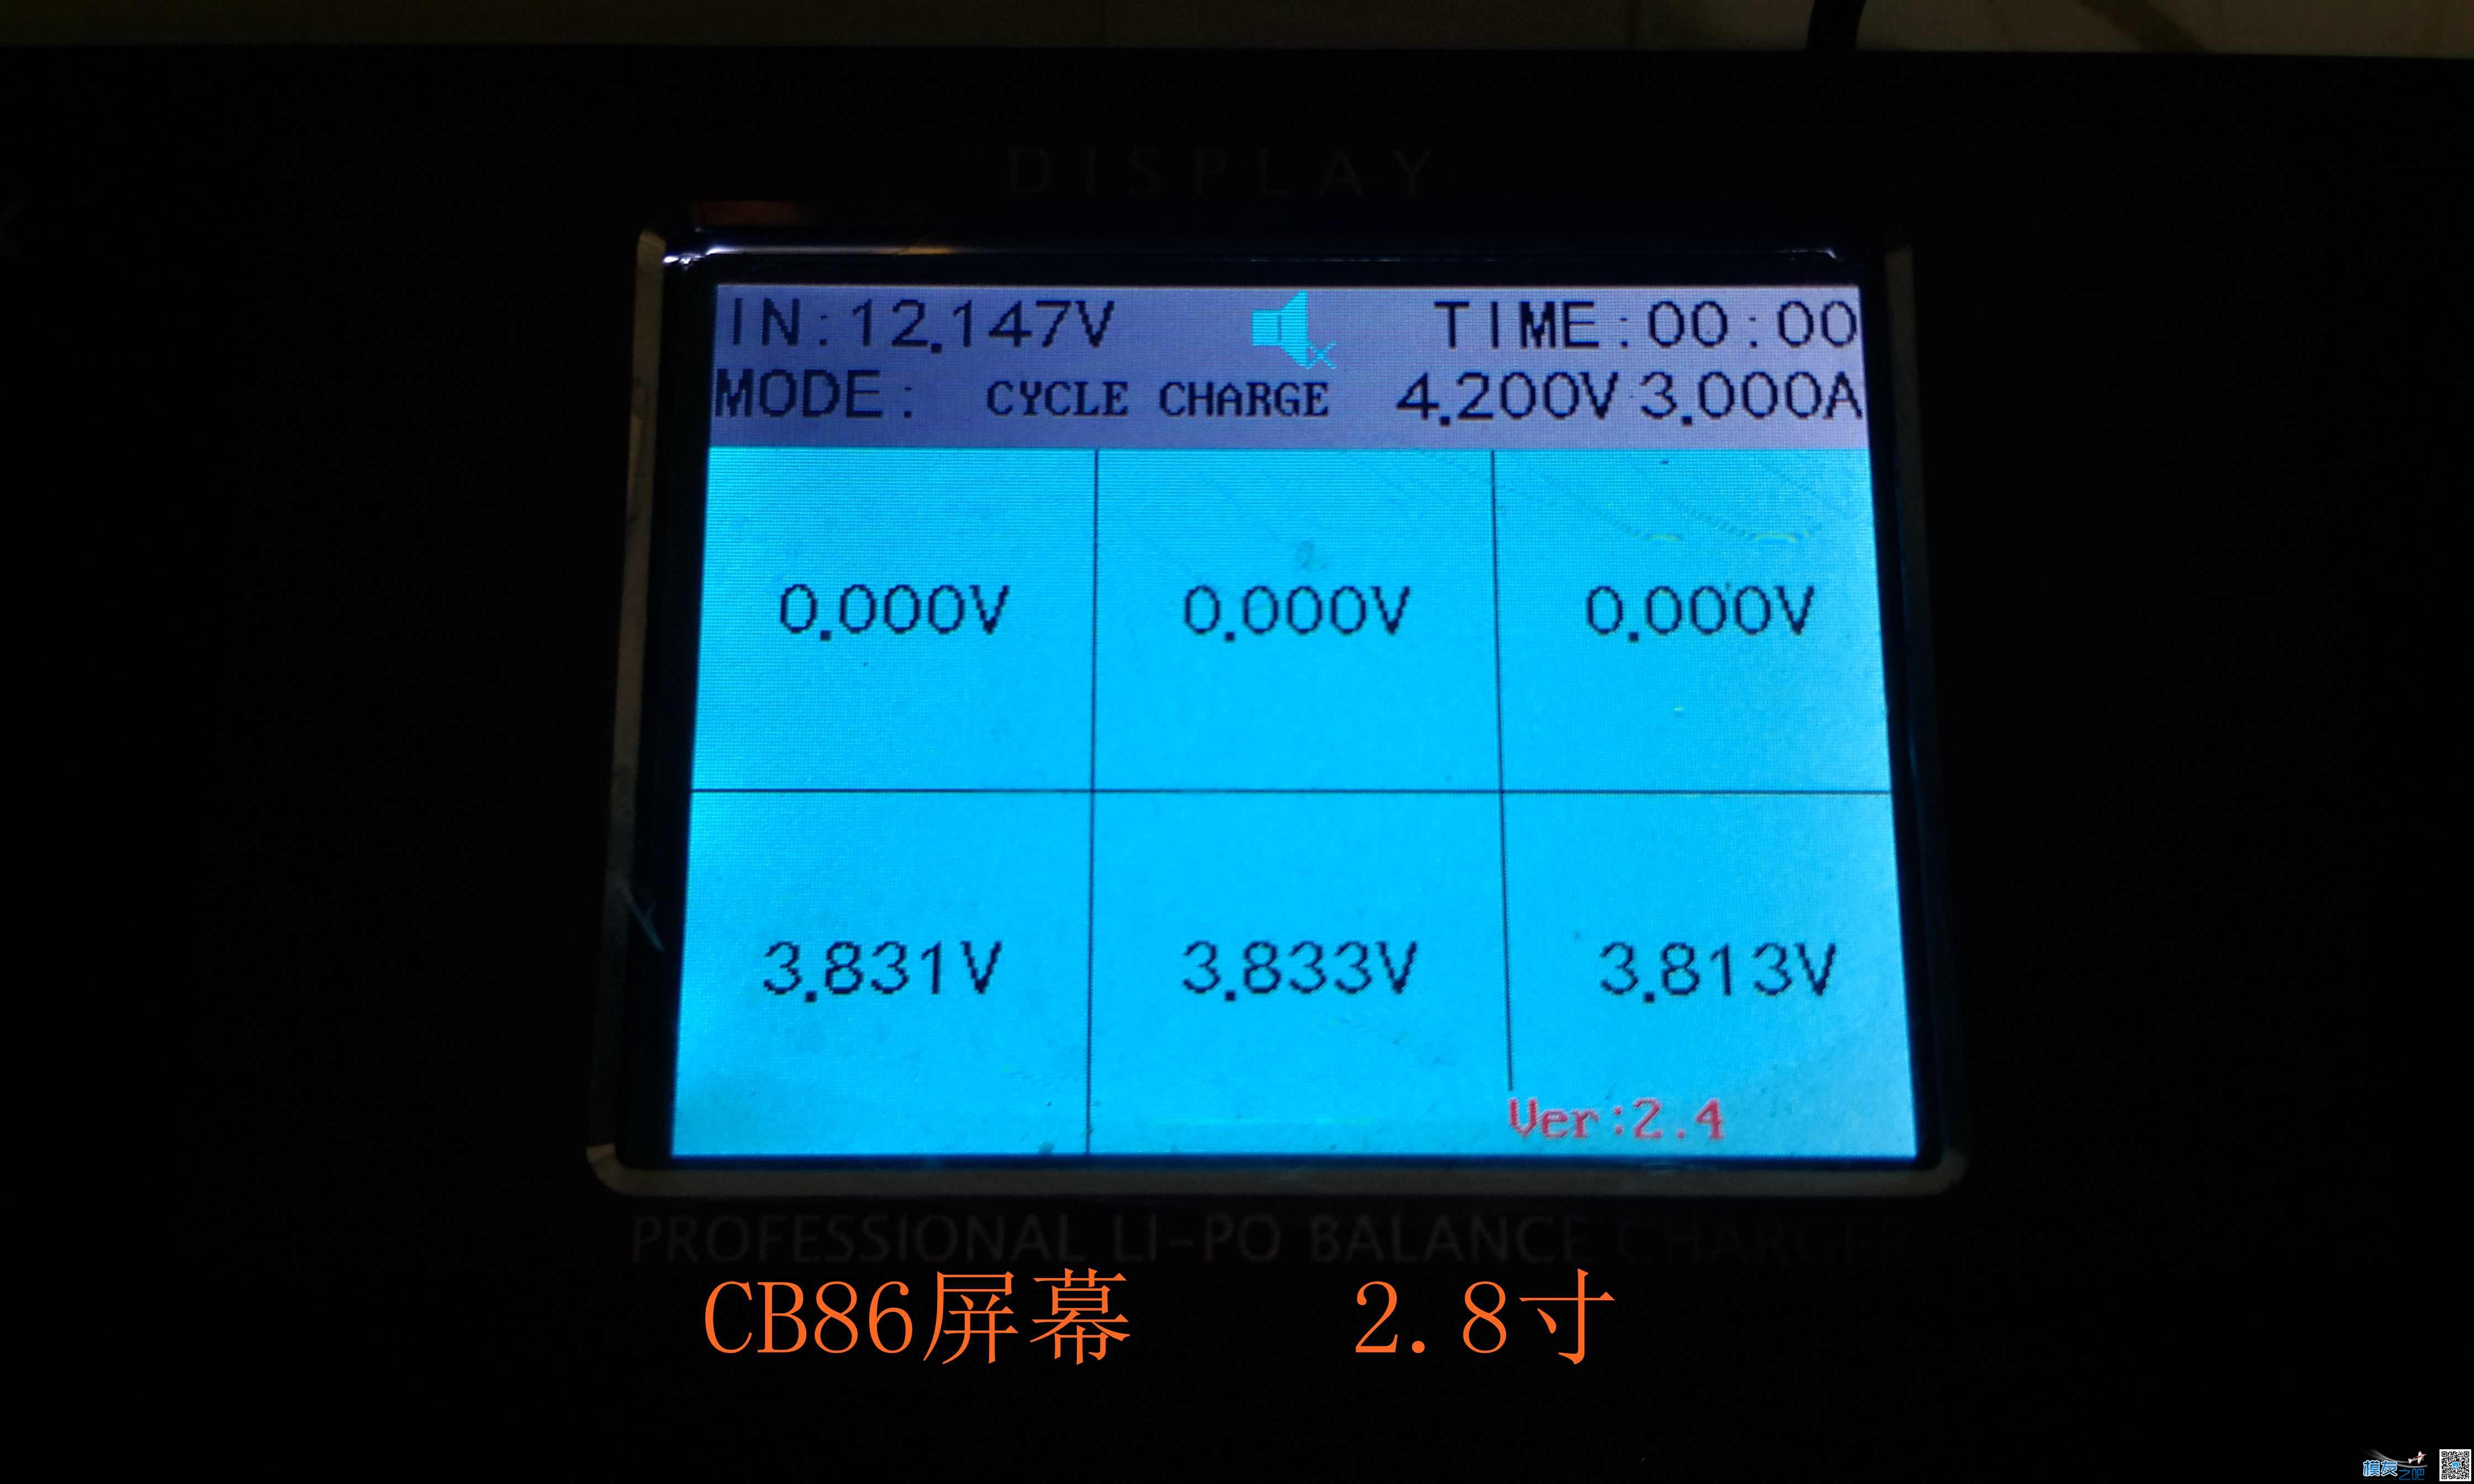 乐迪CP620开箱与CB86PLUS对比测试 电池,充电器,乐迪,固件,html 作者:455090630 6011 